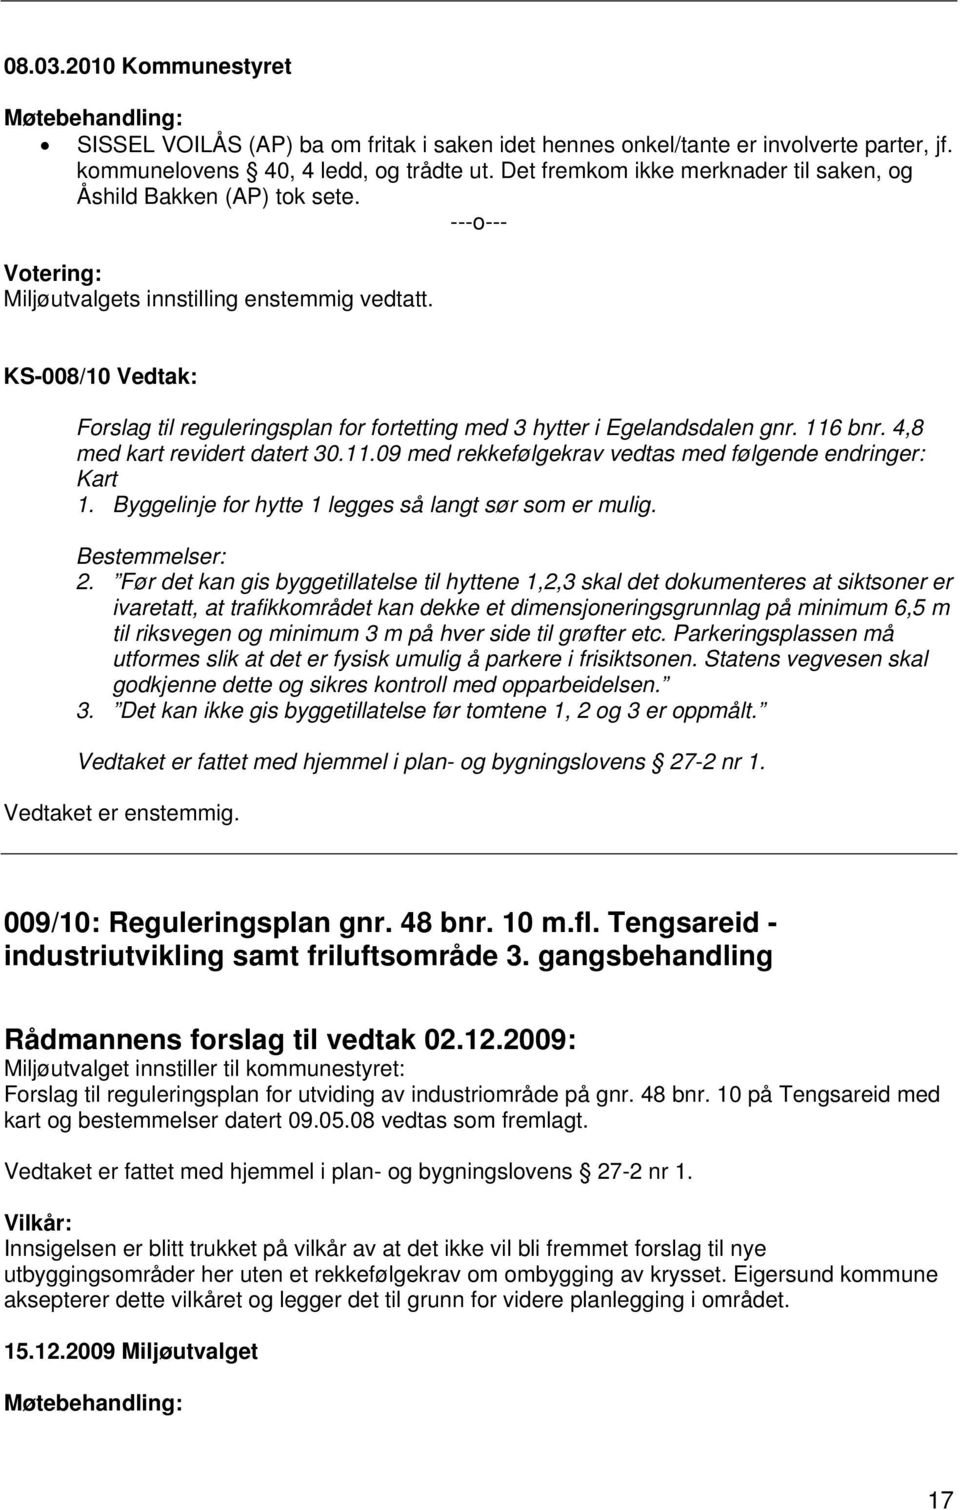 KS-008/10 Vedtak: Forslag til reguleringsplan for fortetting med 3 hytter i Egelandsdalen gnr. 116 bnr. 4,8 med kart revidert datert 30.11.09 med rekkefølgekrav vedtas med følgende endringer: Kart 1.